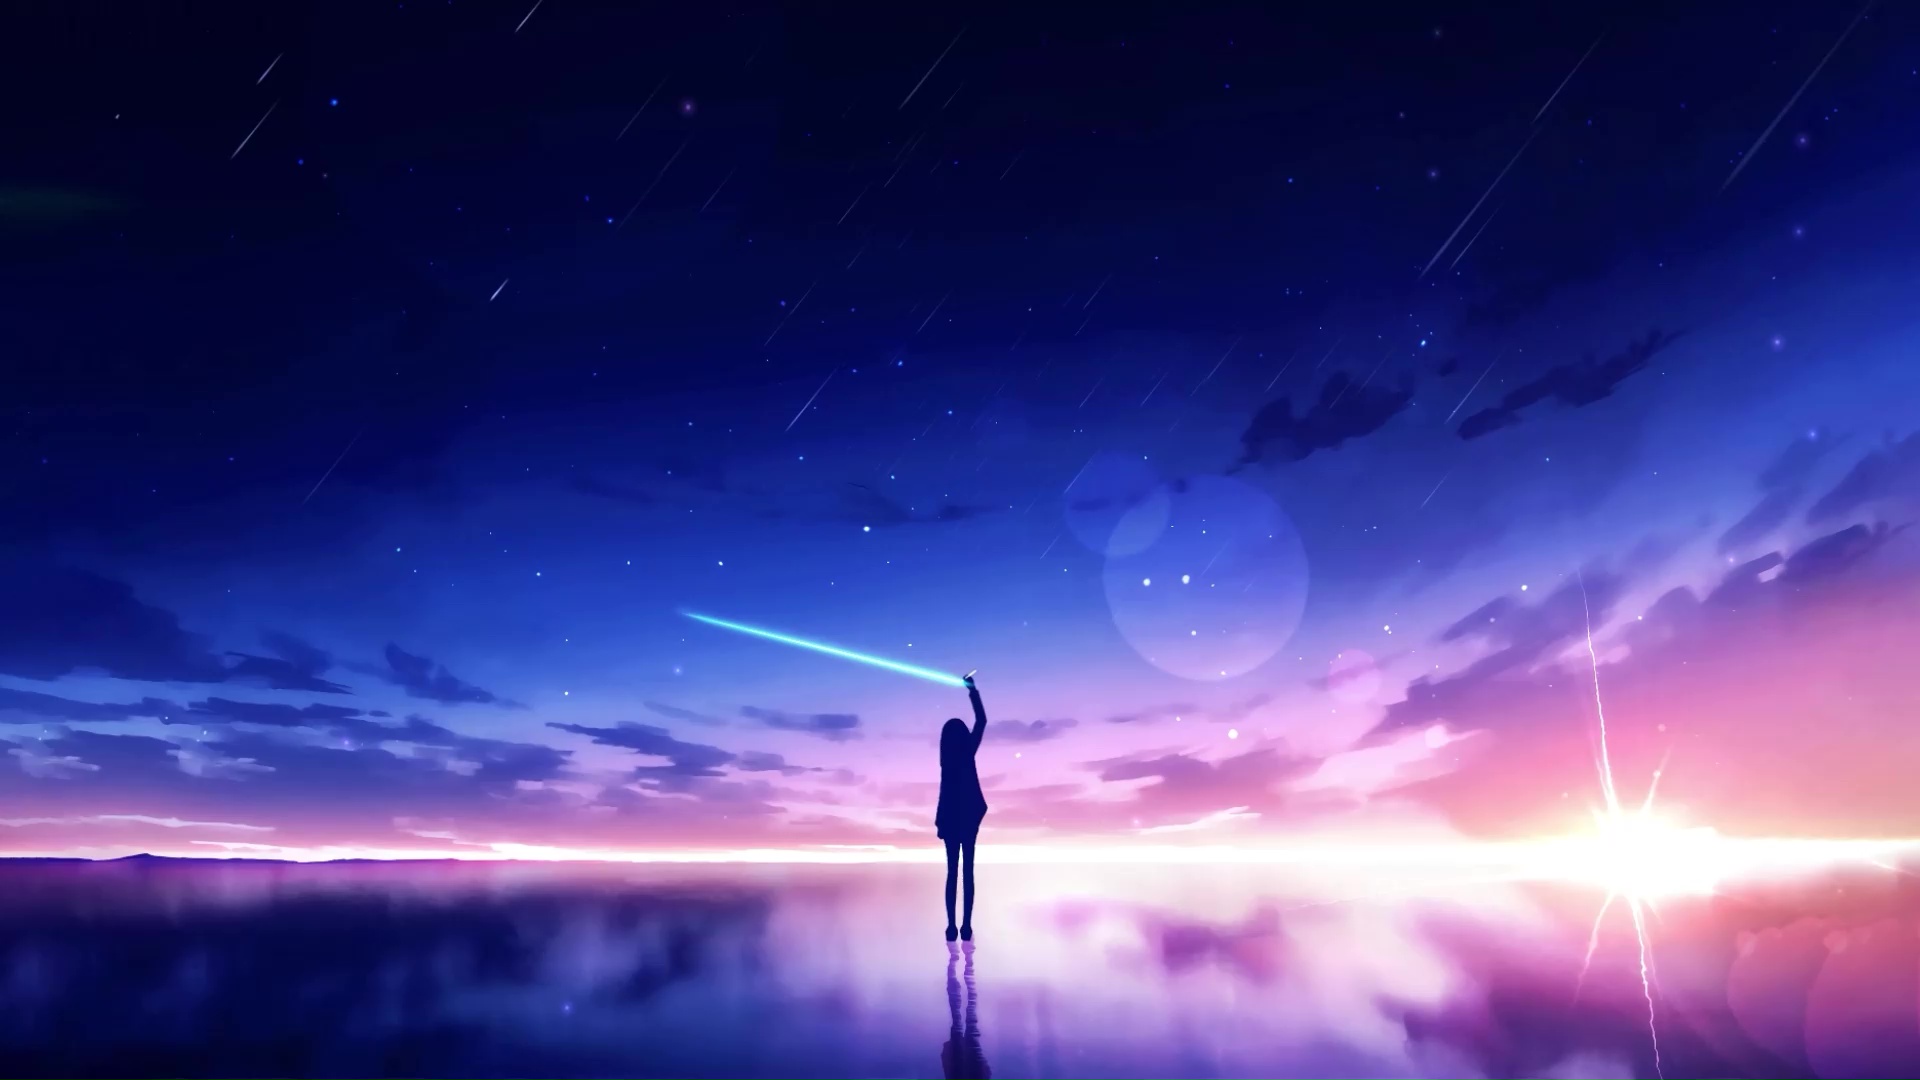 HD wallpaper: anime, anime girls, comic art, sky, blue, stars | Wallpaper  Flare